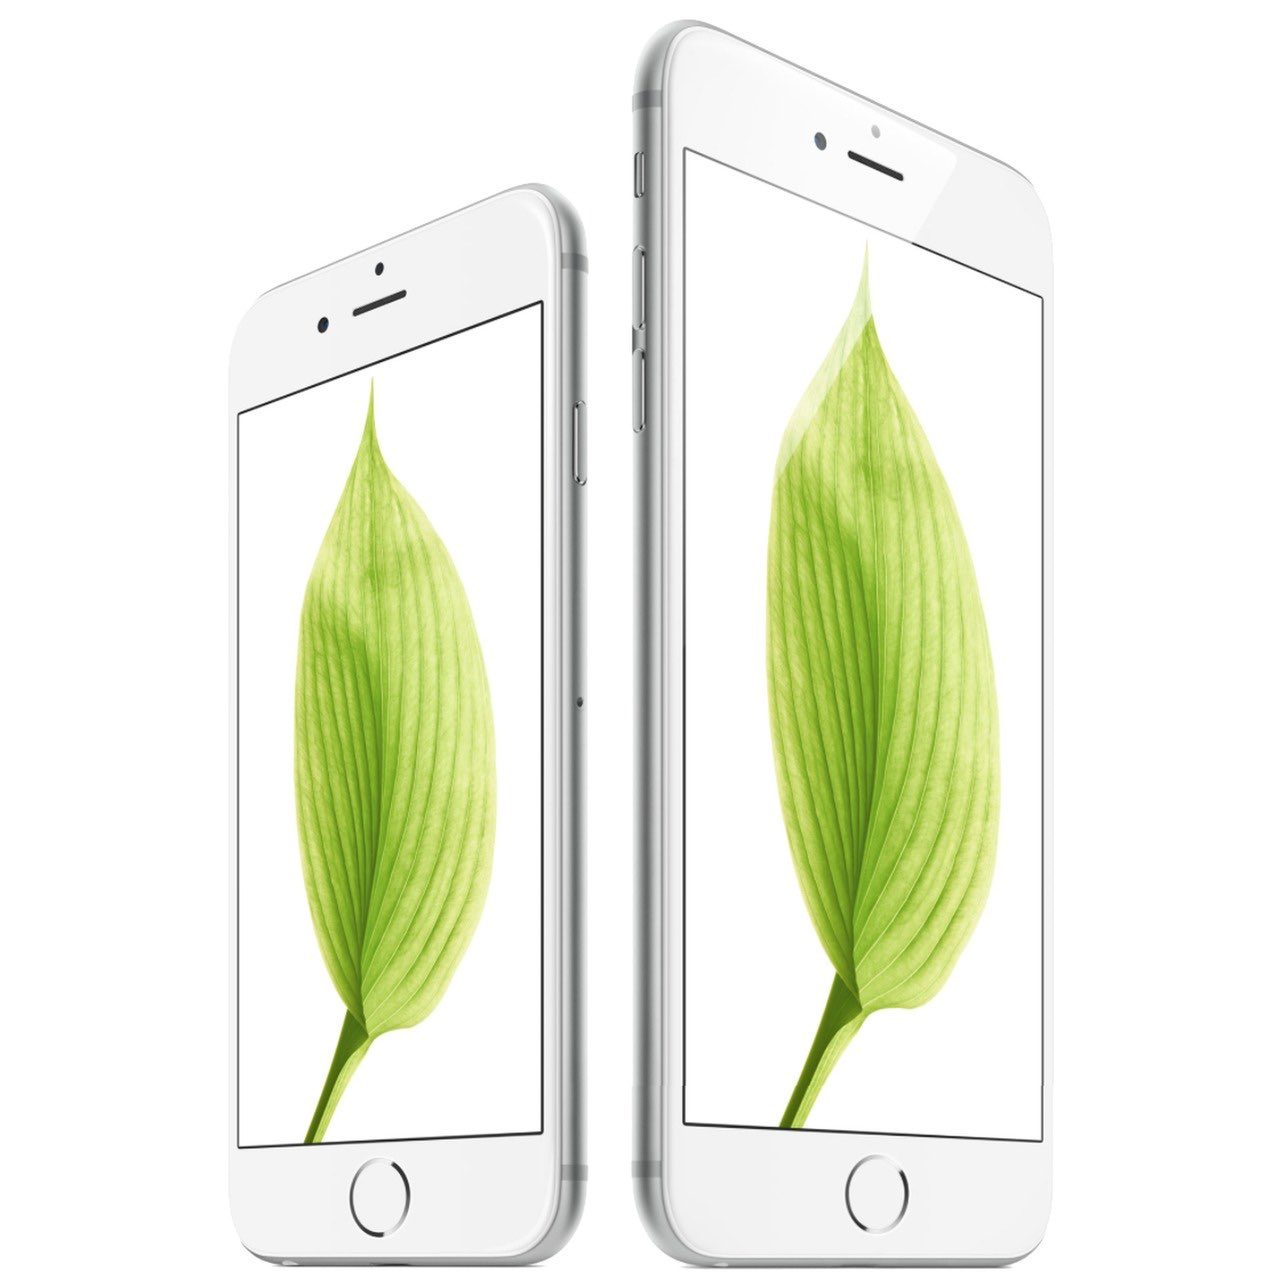 Koning Lear Microprocessor Minimaal iPhone 6s Plus kopen met abonnement: vergelijk prijs iPhone 6s Plus